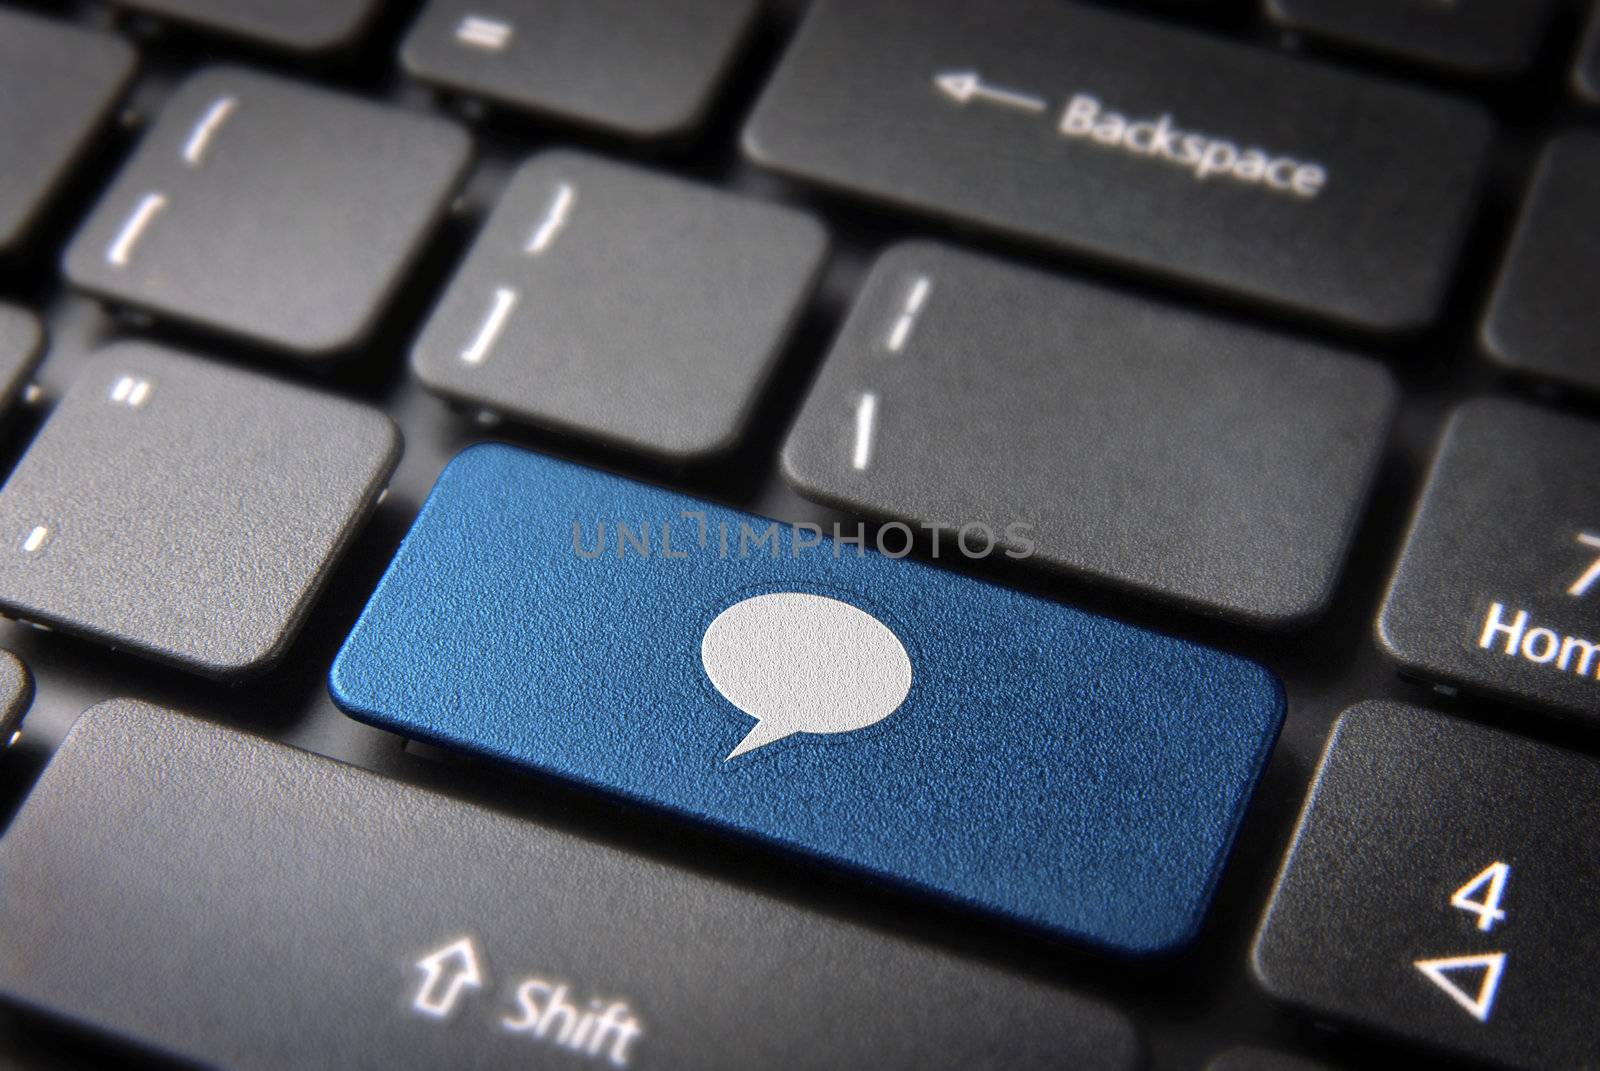 Blue speech bubble keyboard key by cienpies